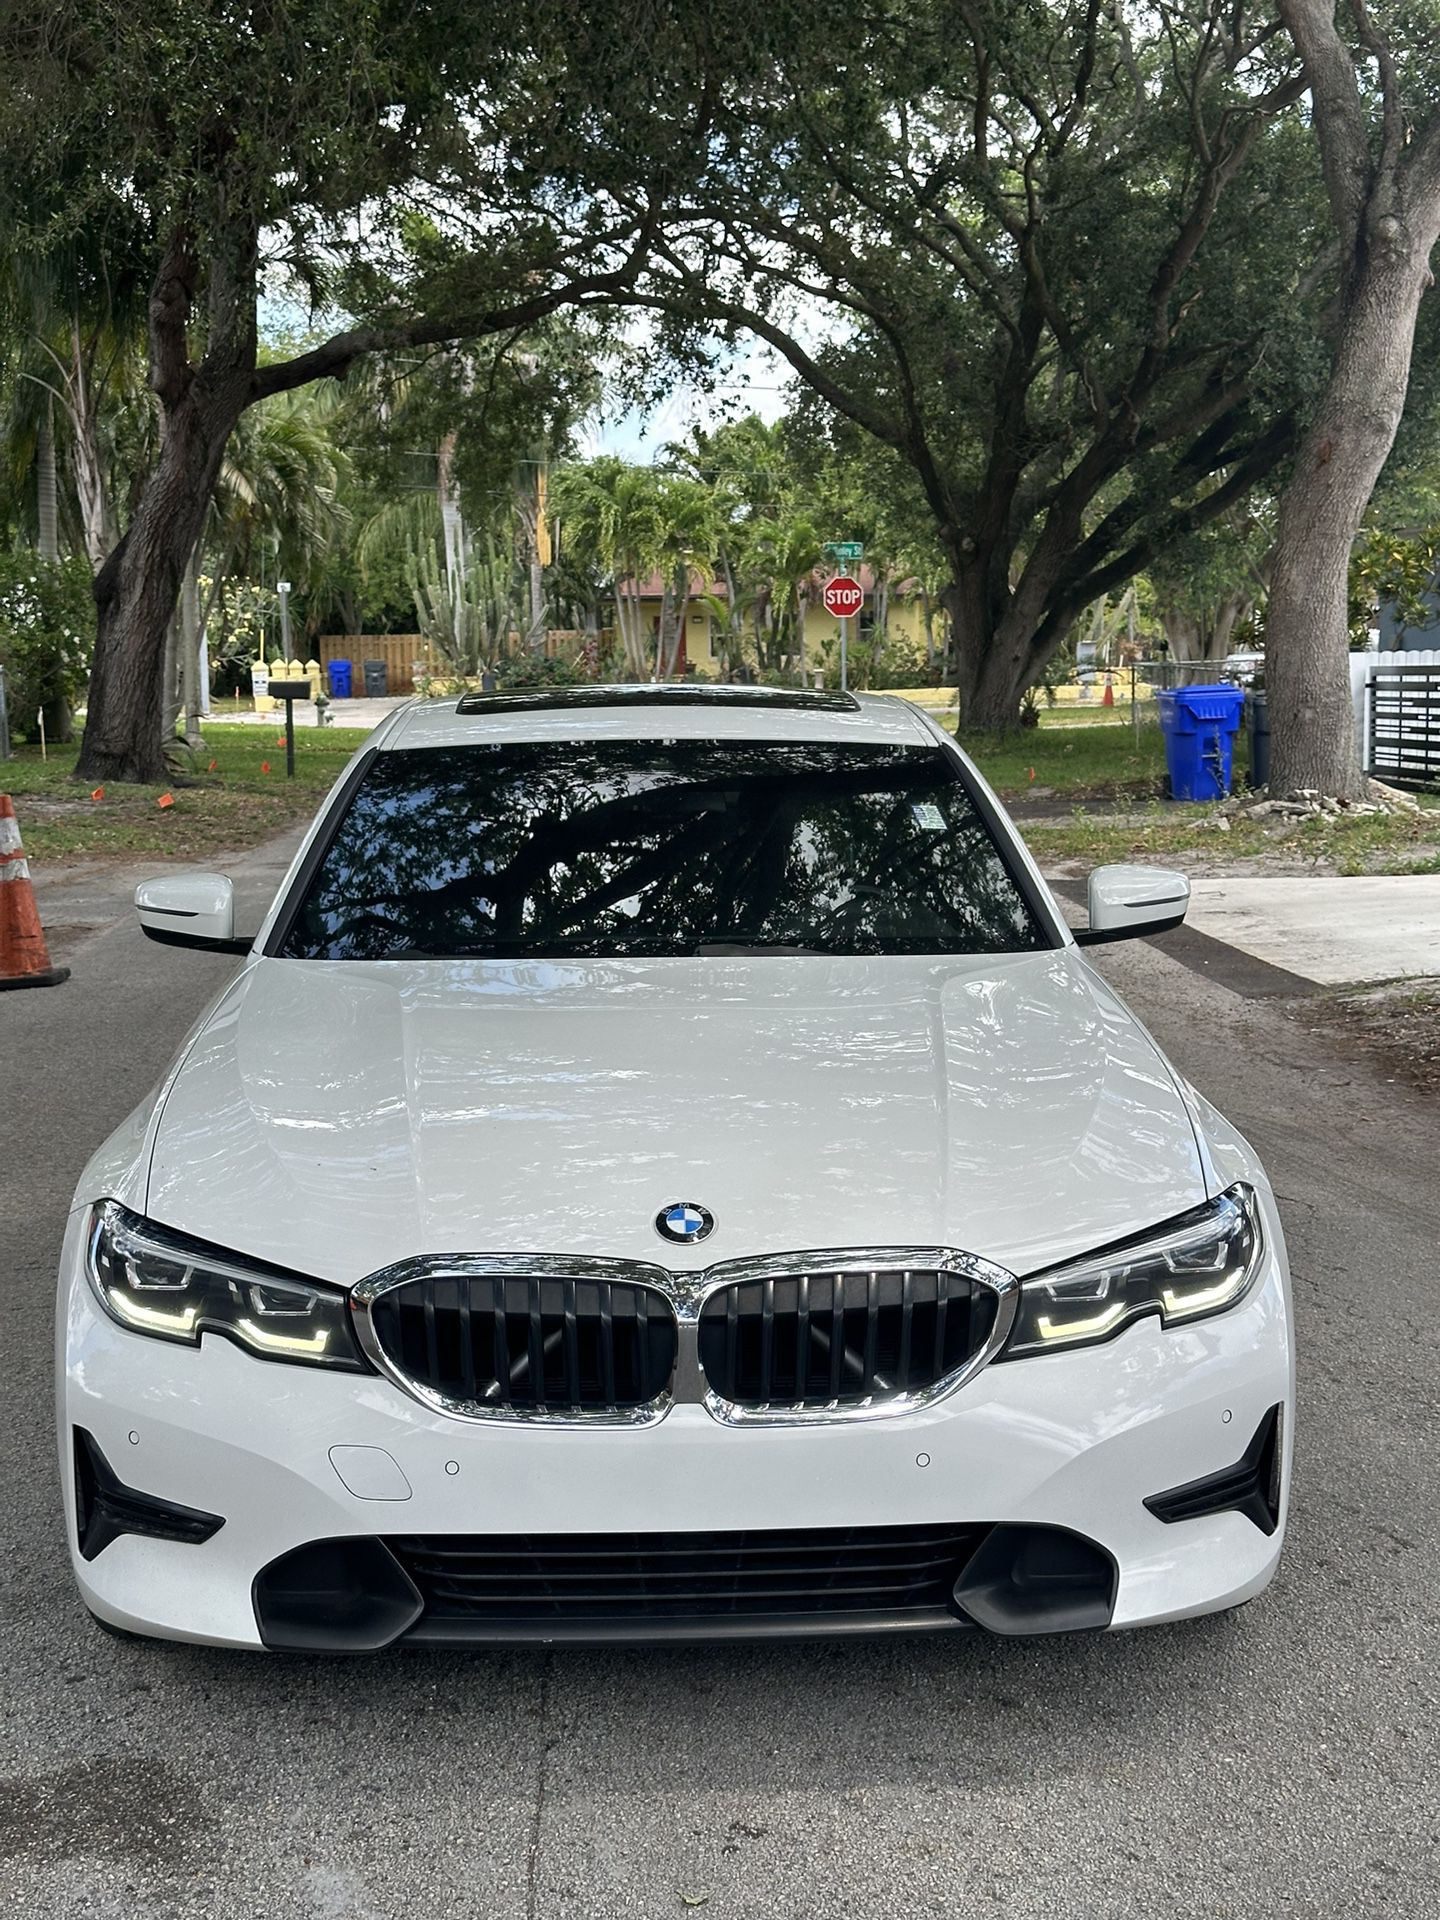 2020 BMW 330i